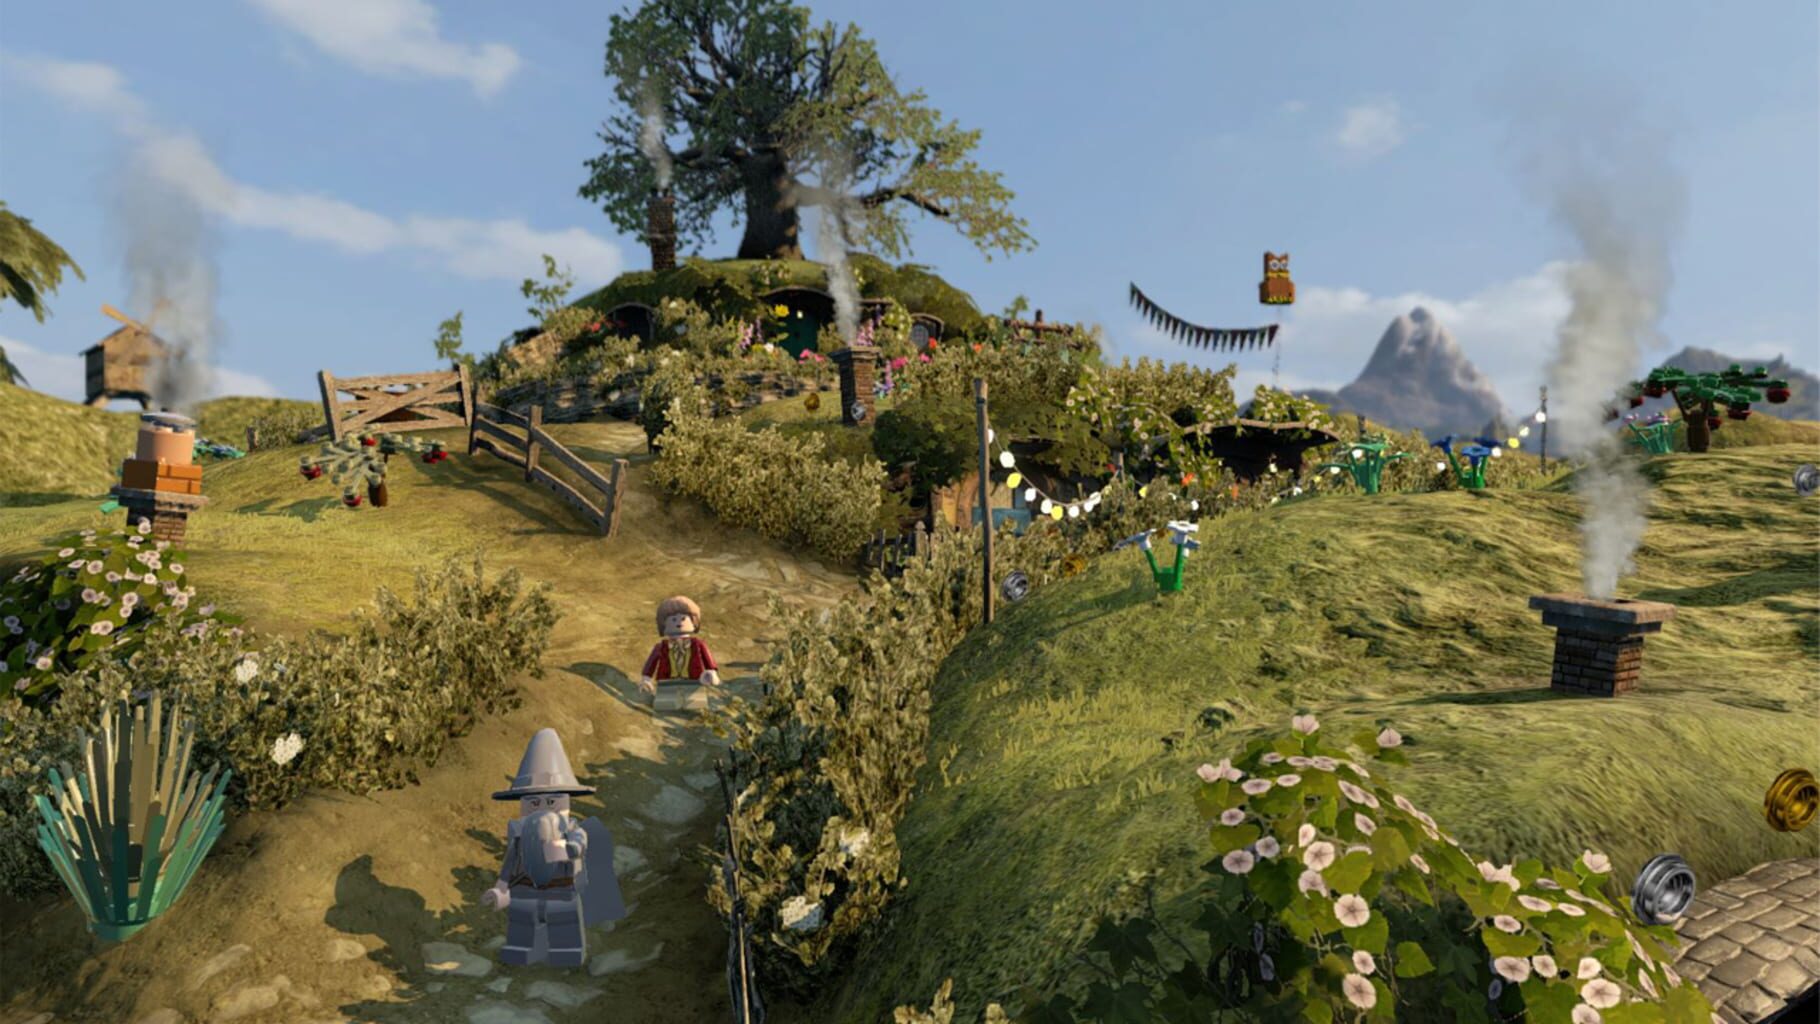 Captura de pantalla - LEGO The Hobbit: The Big Little Character Pack